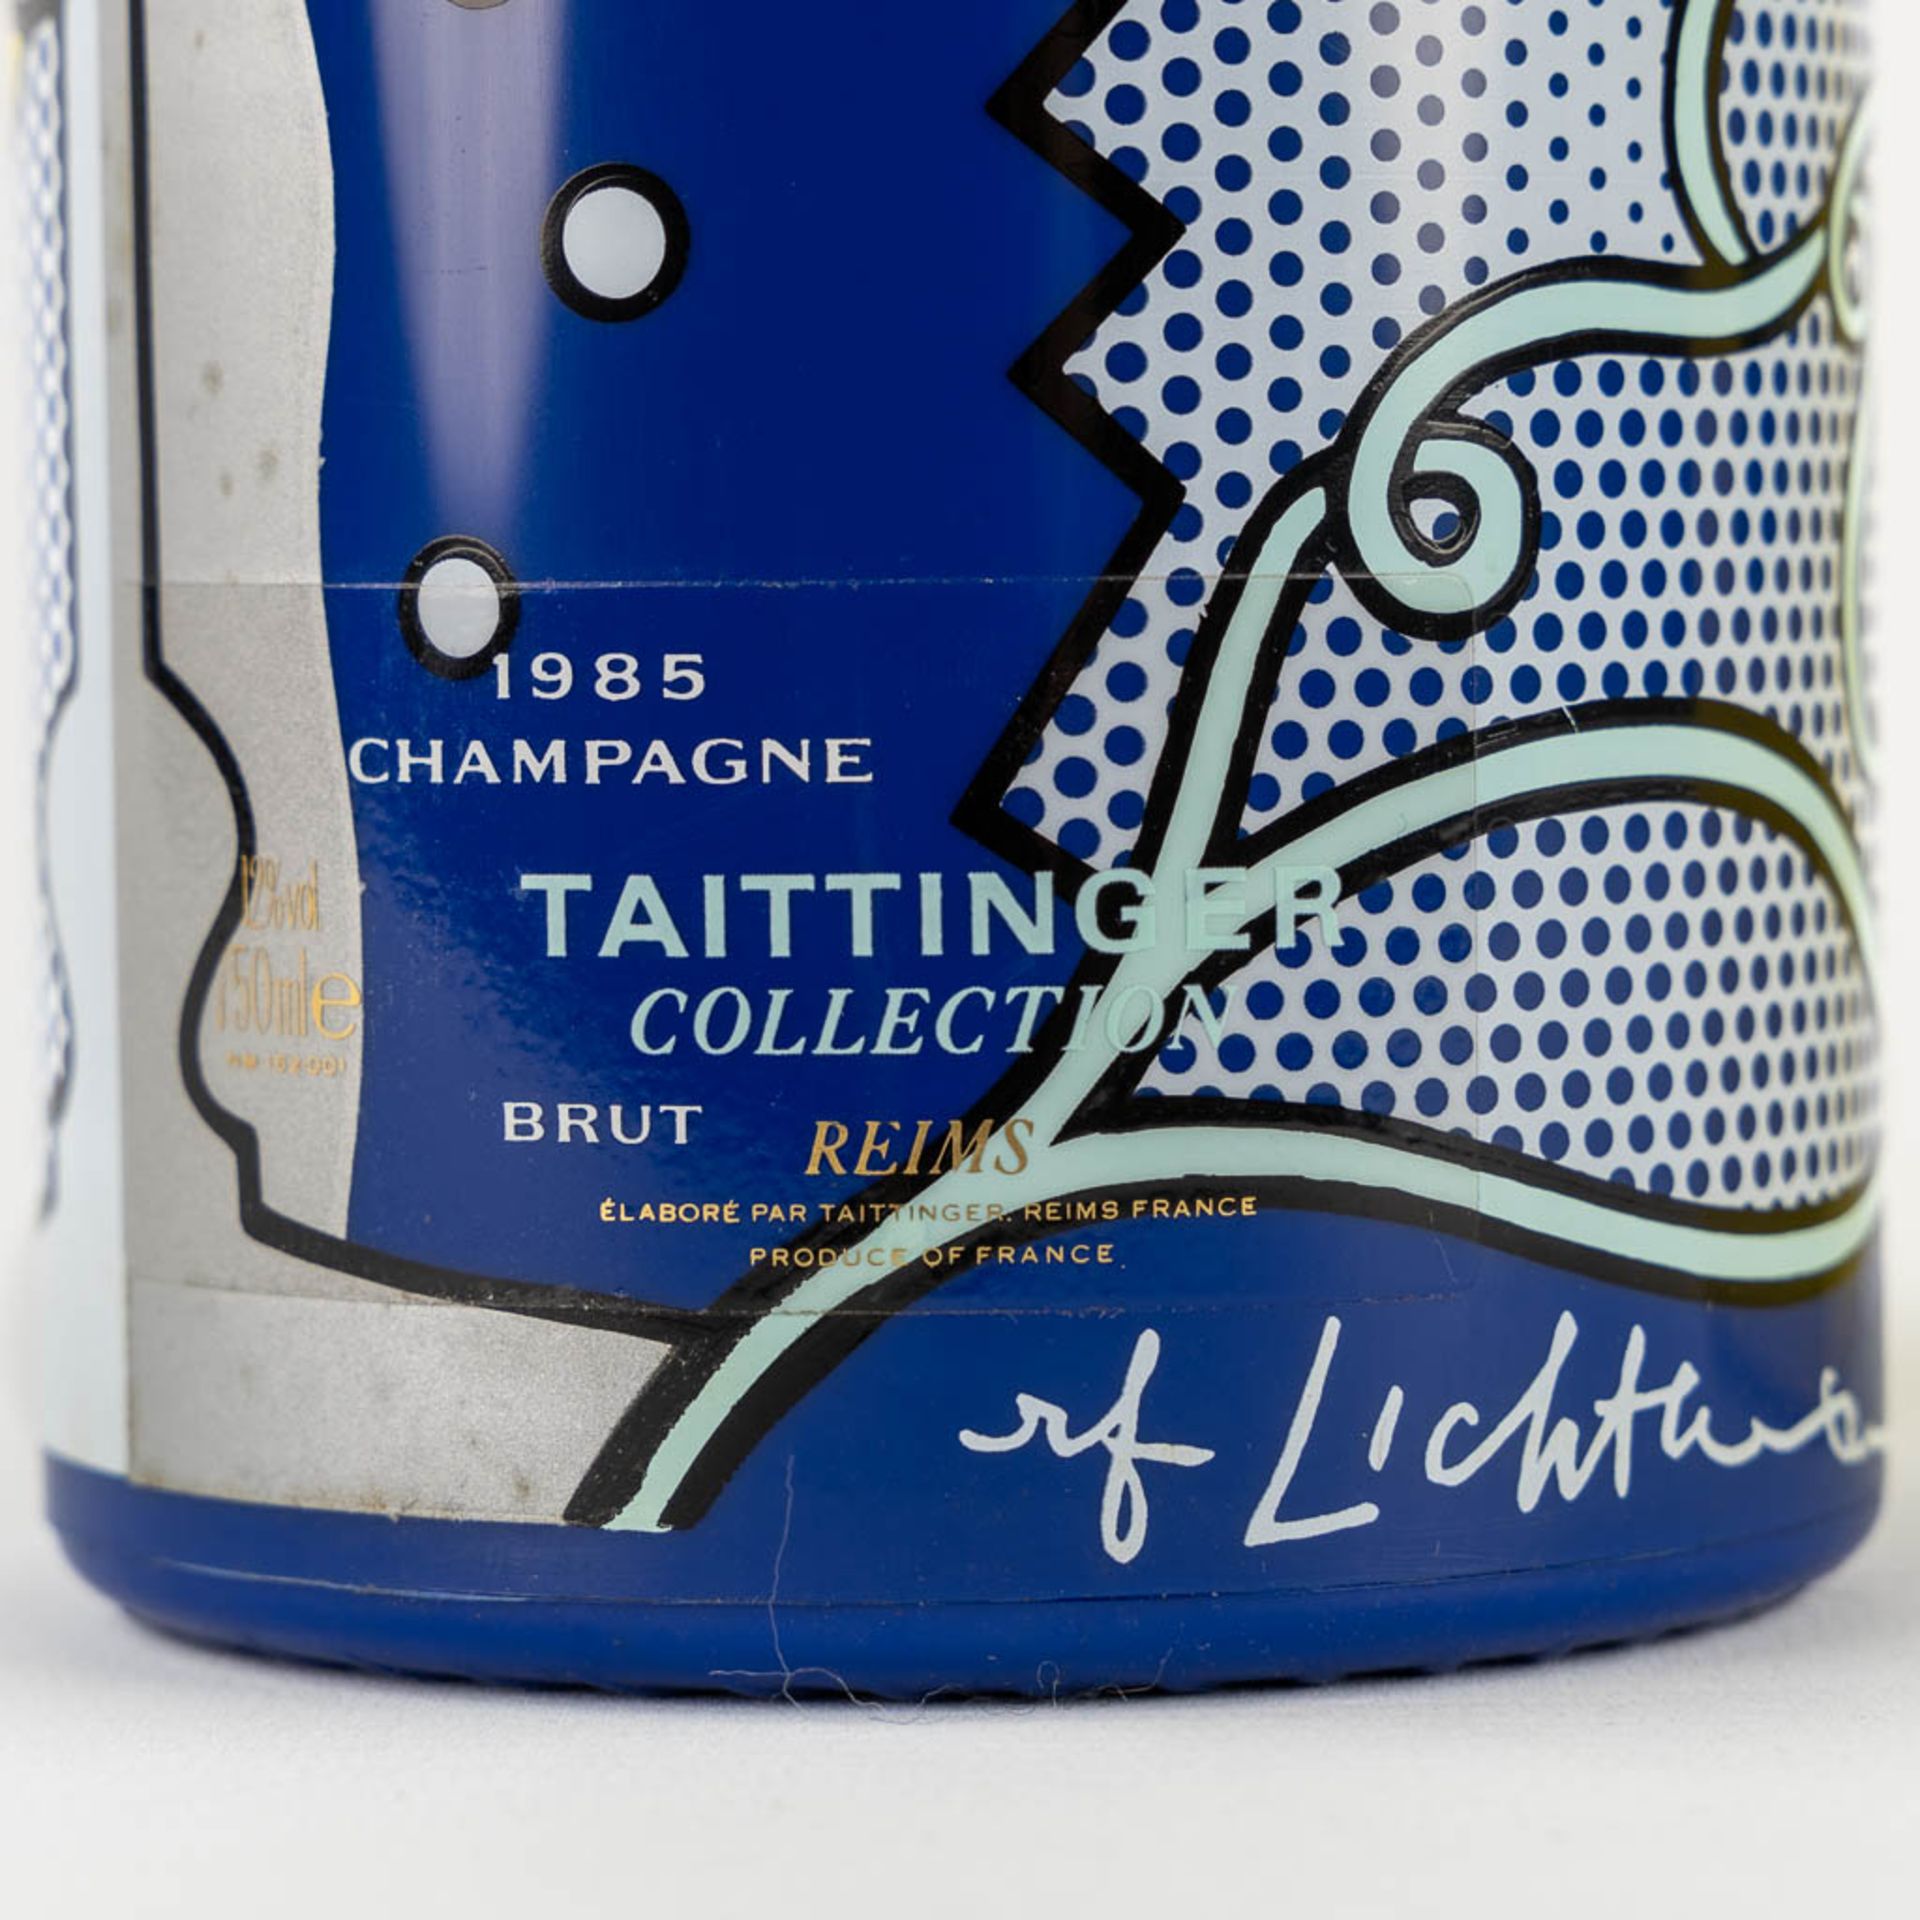 1985 Taittinger Collection Roy Lichtenstein, Champagne - Bild 2 aus 3